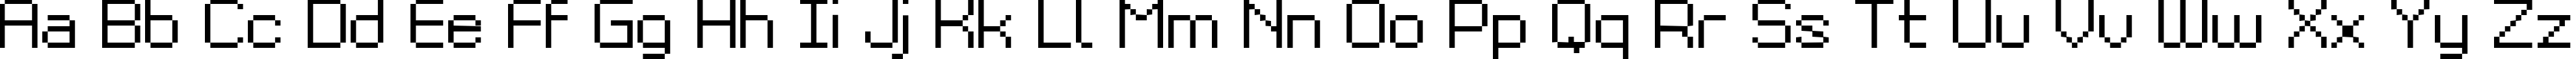 Пример написания английского алфавита шрифтом Grixel Kyrou 9 Regular